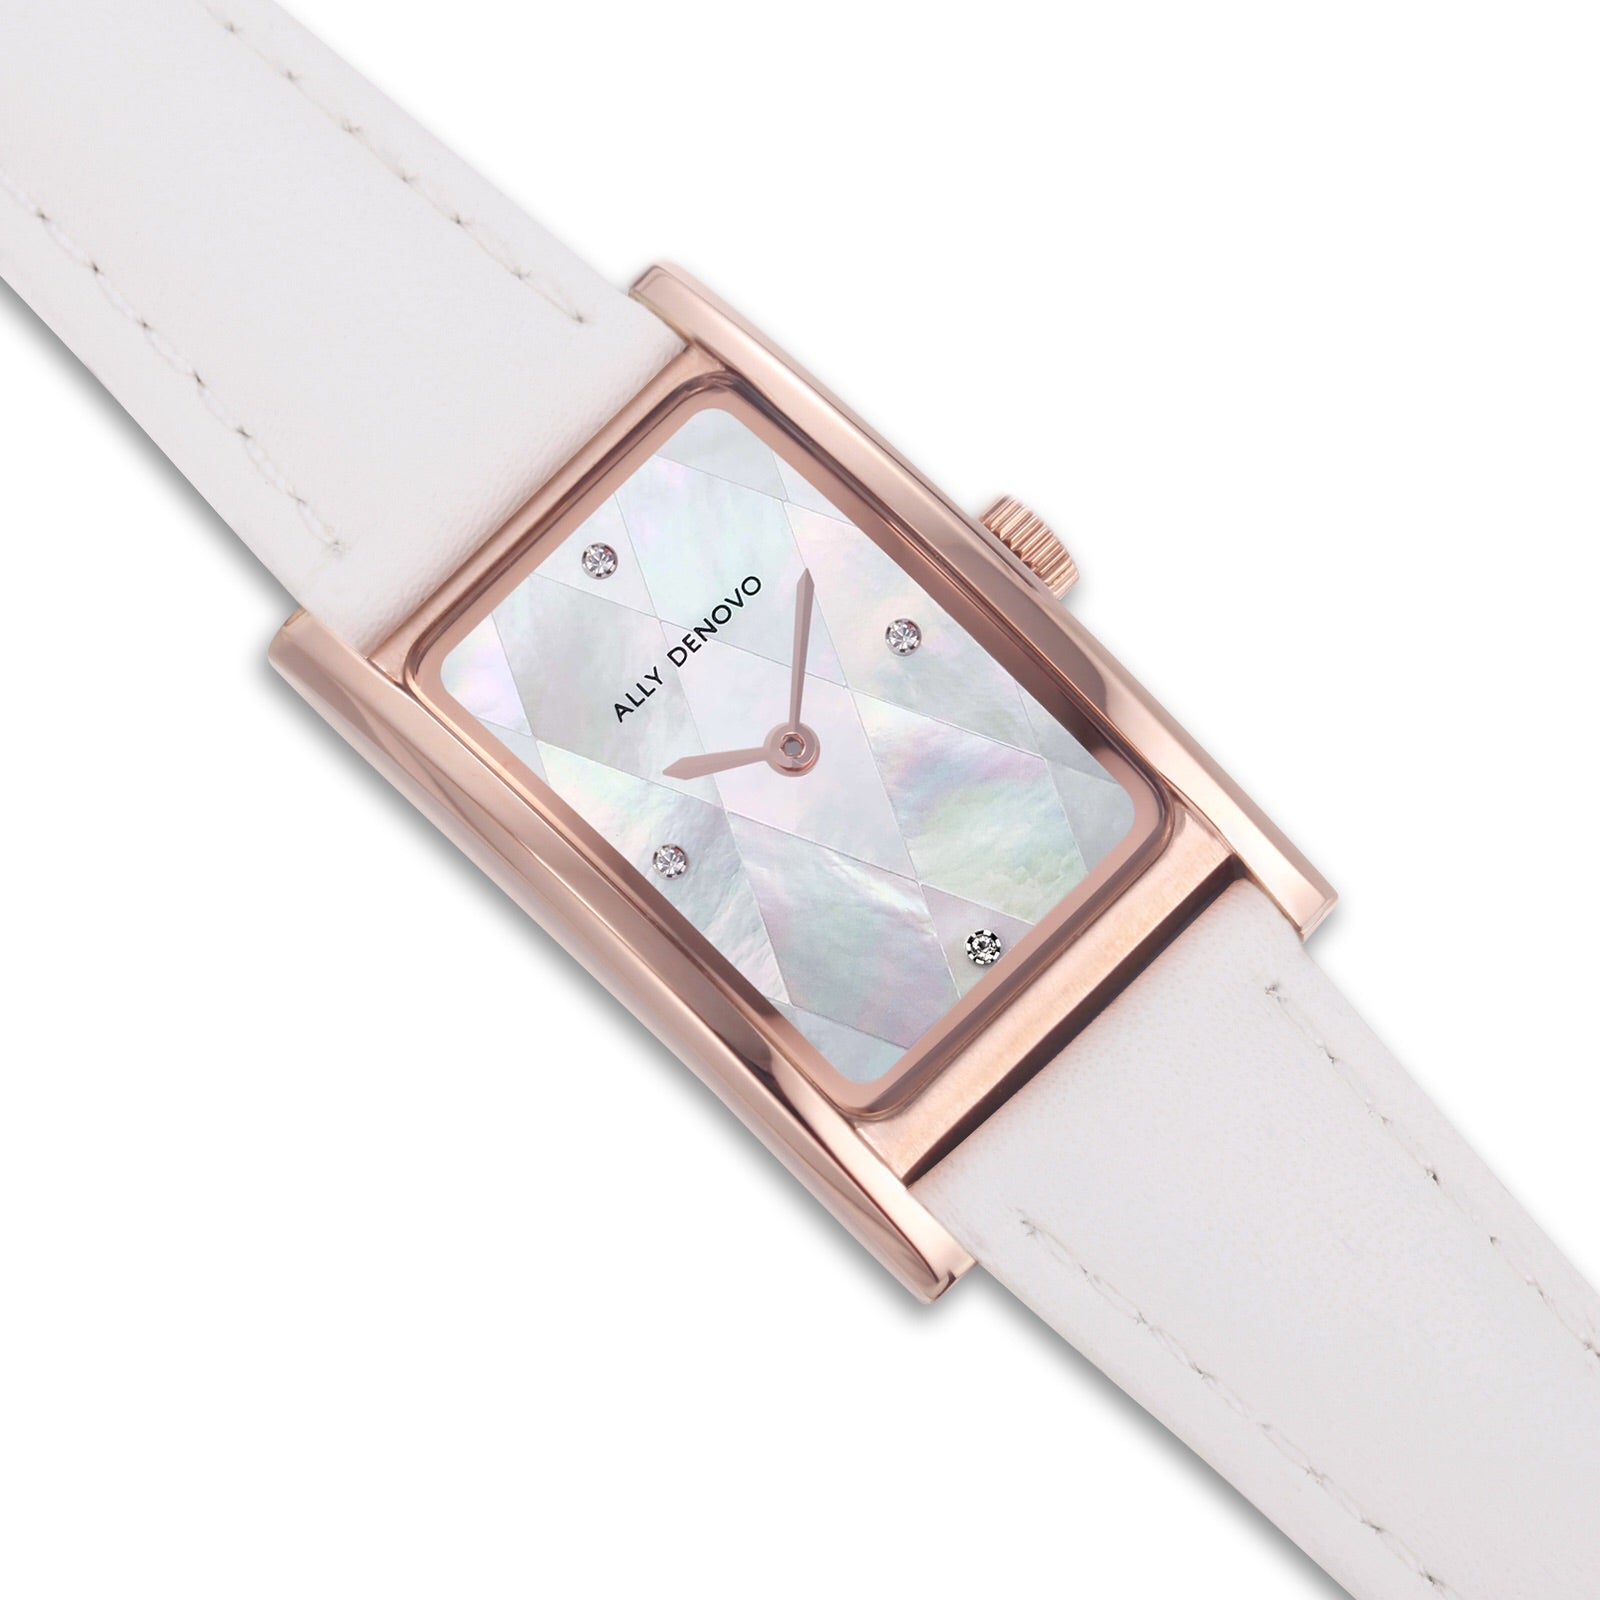 【限量頂級方形琉璃錶鍊禮盒】全白玫瑰金框手錶 限時贈送 銀製手鍊